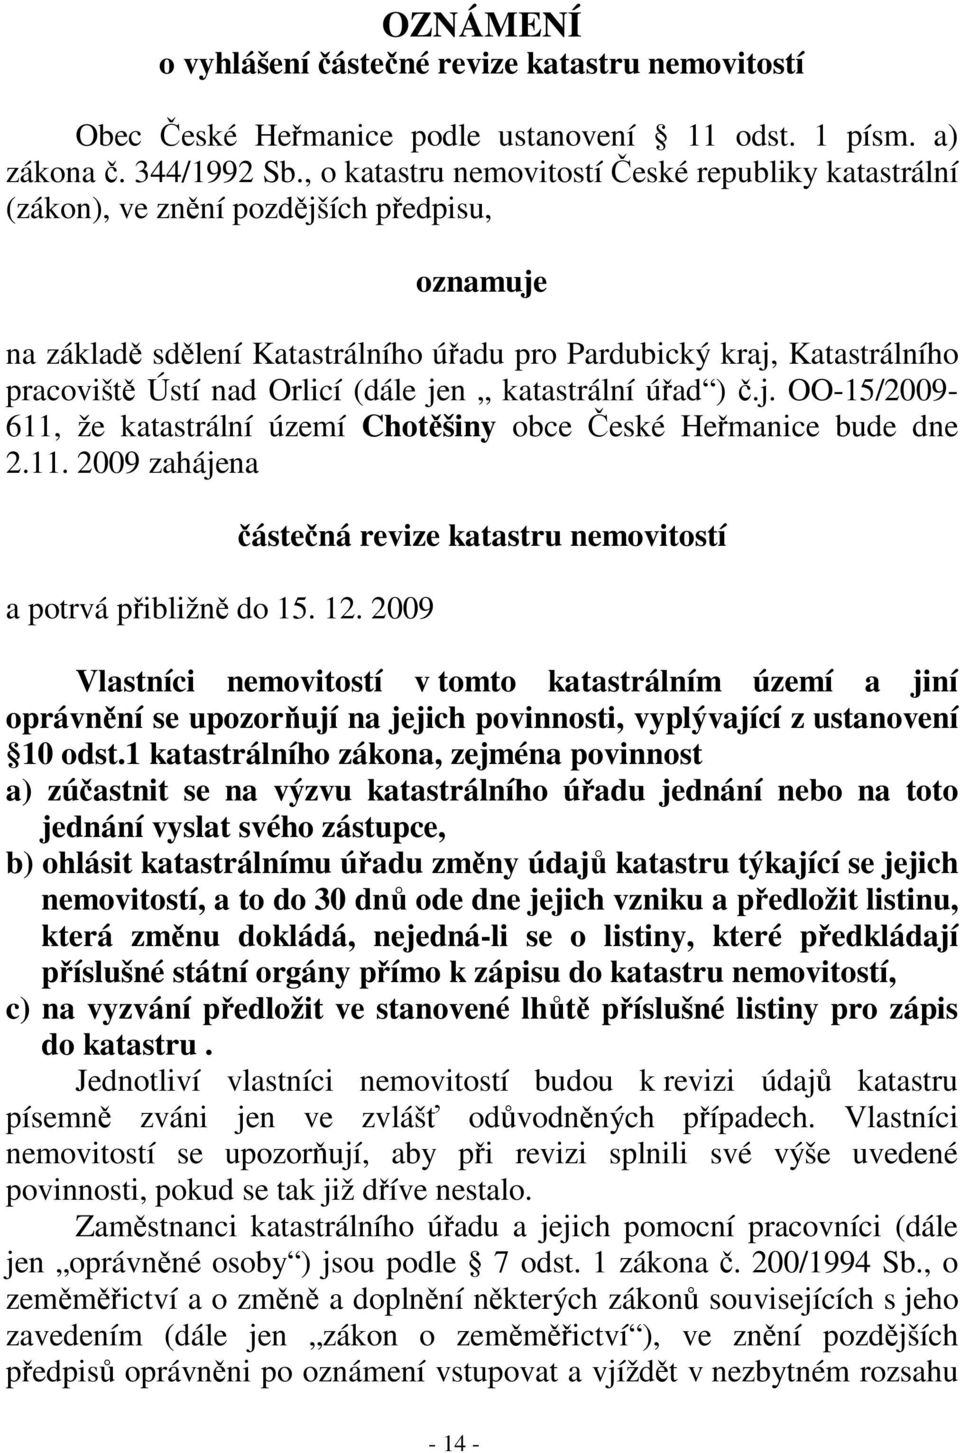 jen katastrální úad ).j. OO-15/2009-611, že katastrální území Chotšiny obce eské Hemanice bude dne 2.11. 2009 zahájena a potrvá pibližn do 15. 12.